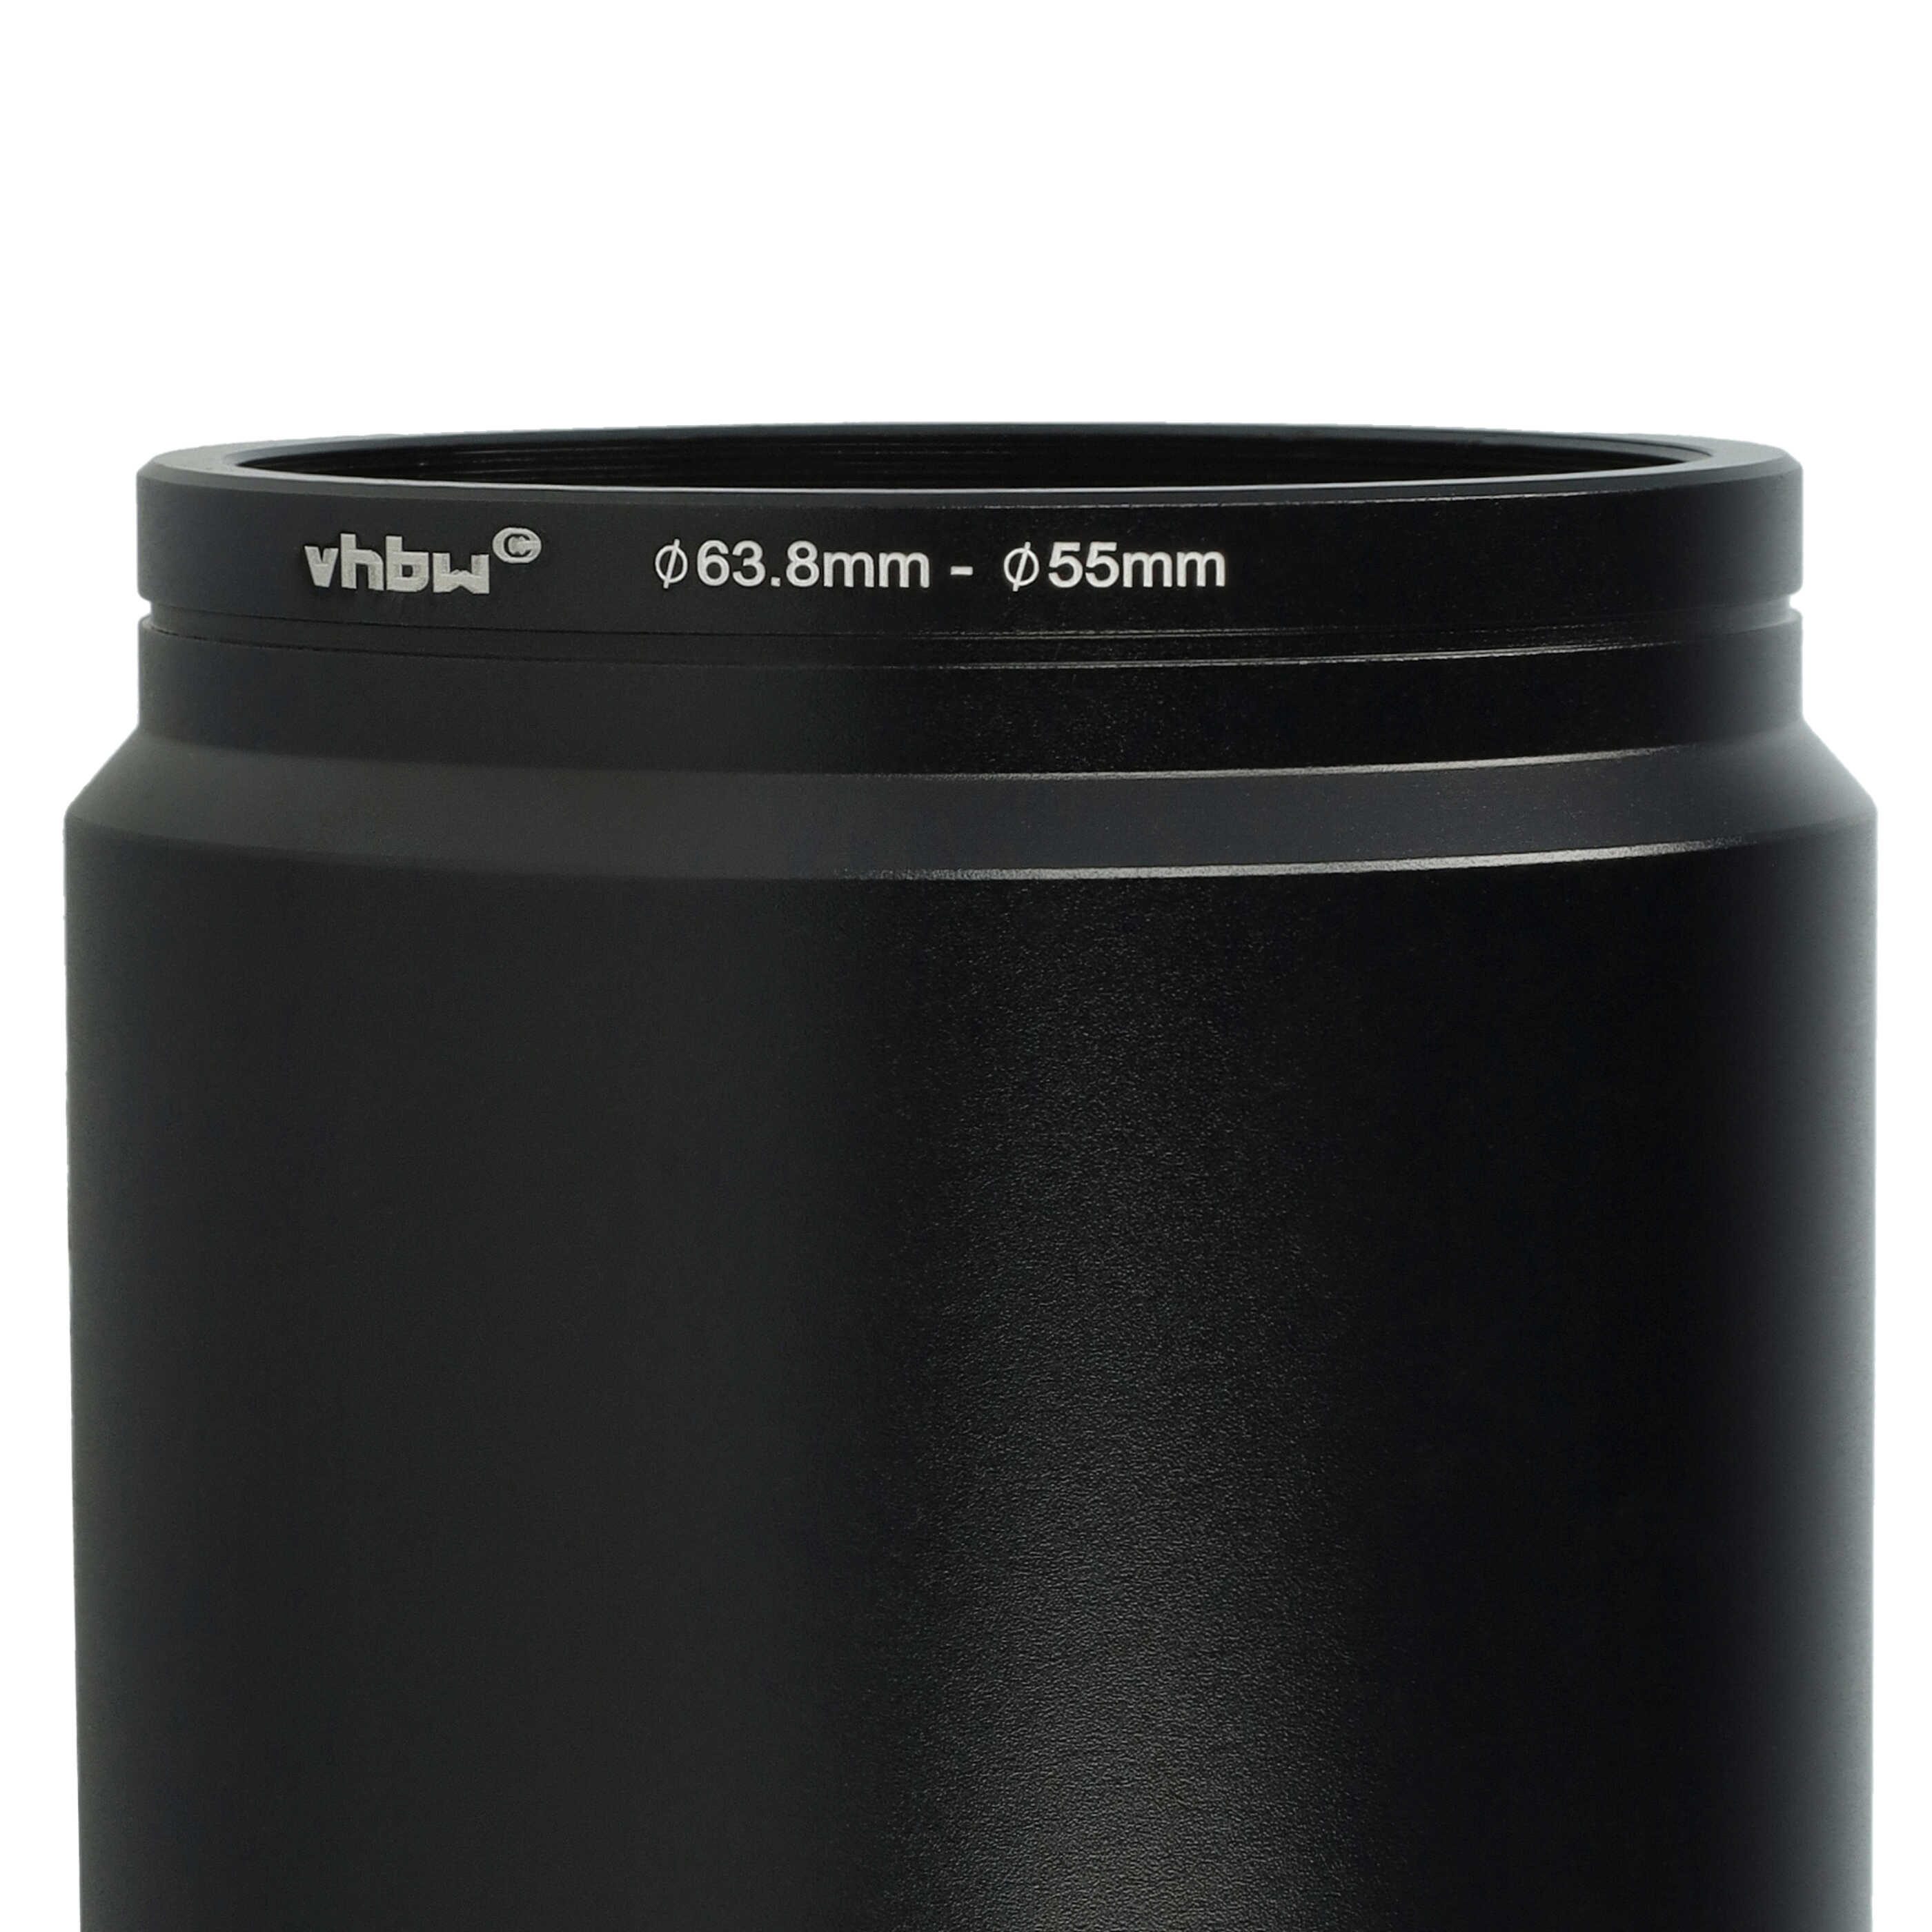 Redukcja filtrowa 55 mm do obiektywu aparatu Lumix DMC-FZ300